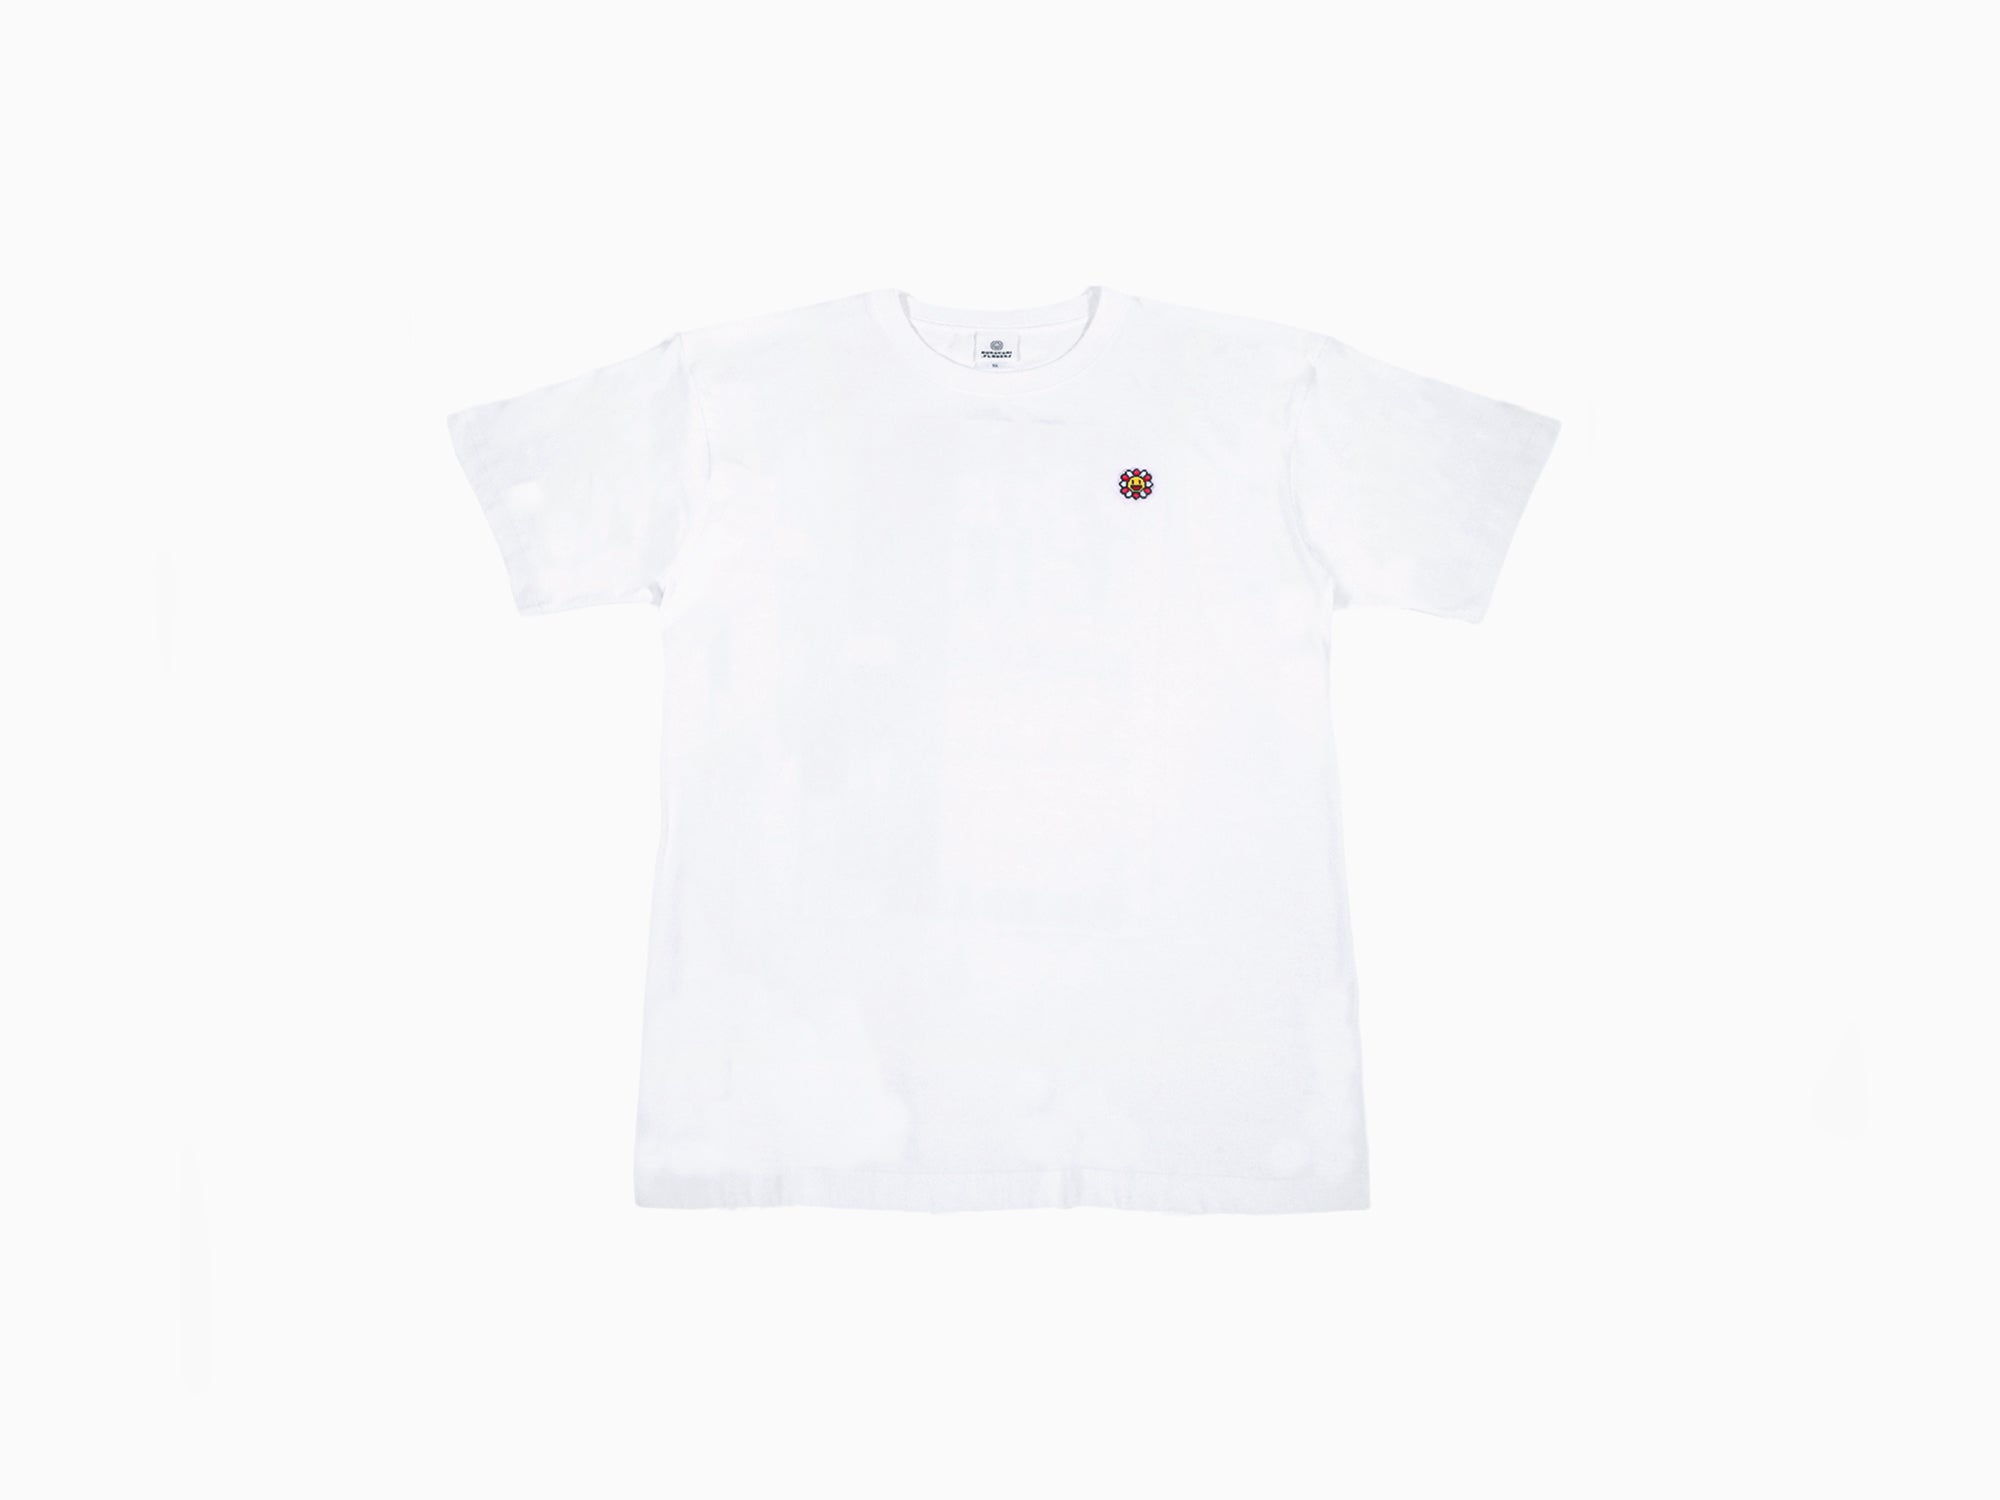 Takashi Murakami - Murakami.Flowers #0000 M.F. Emblem - White x Black T-Shirt